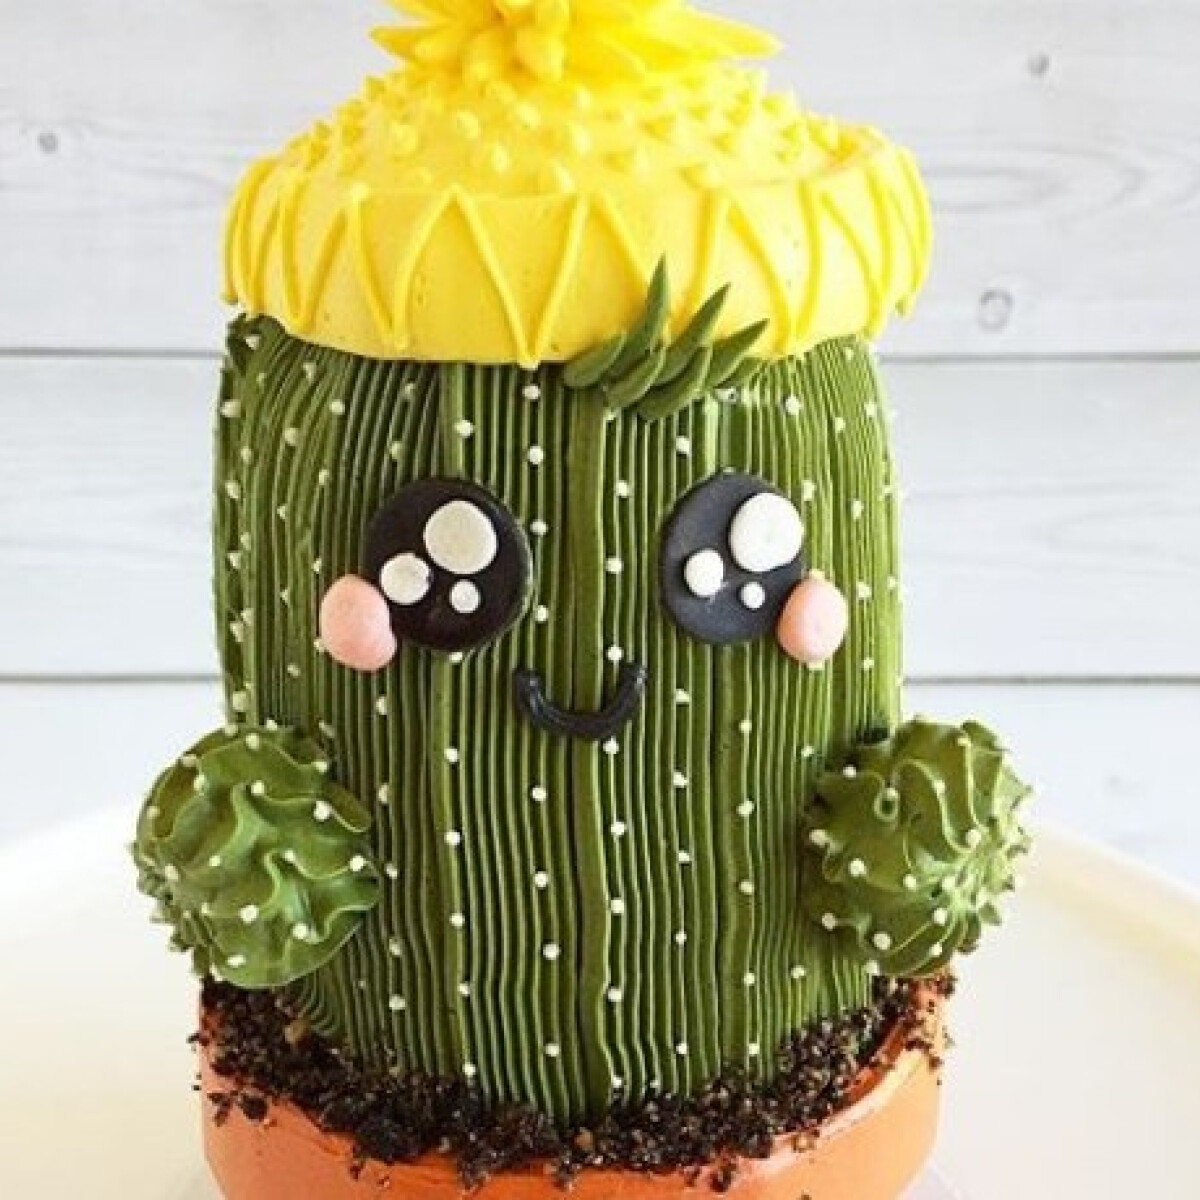 Pozsgásnövény-imádók kedvencei lesznek ezek a torták - pici mosolygós kaktusz a tortádon? Igen!